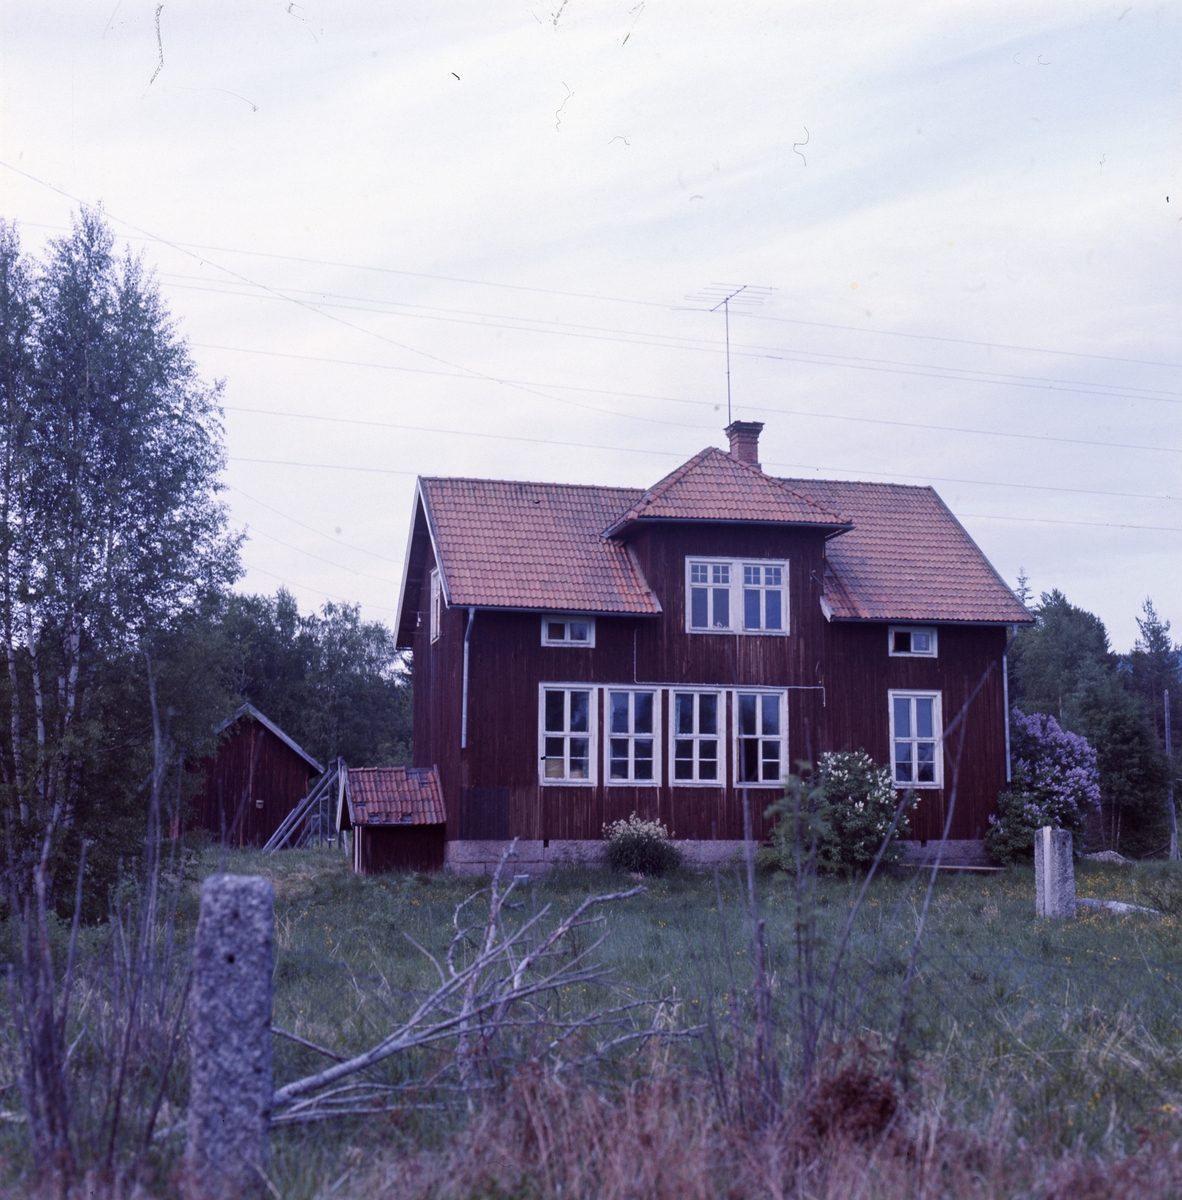 Bilden föreställer den skola som silversmeden Rosa Taikon och hennes man Bernd Janusch köpte kring 1970. Paret byggde om skolan till silververkstad och bostad. De flyttade till skolan i Flor, Ytterhogdal år 1973.